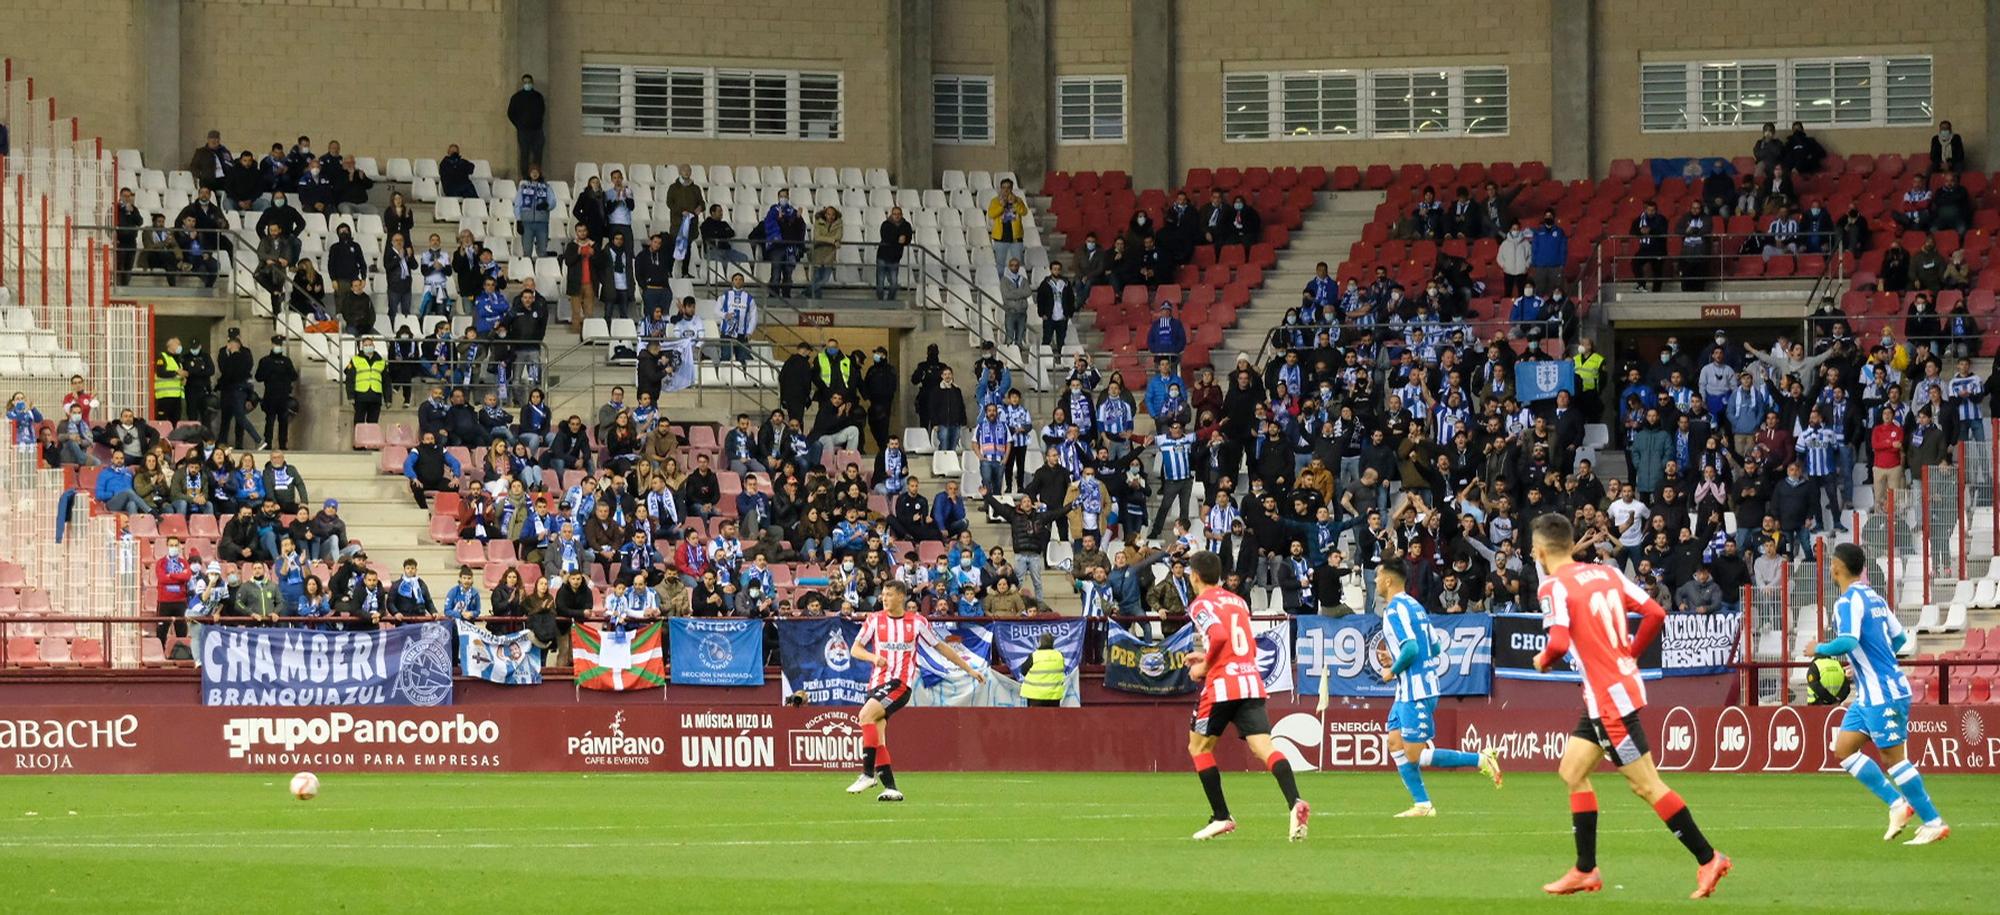 El Dépor le gana 0-1 a la UD Logroñés